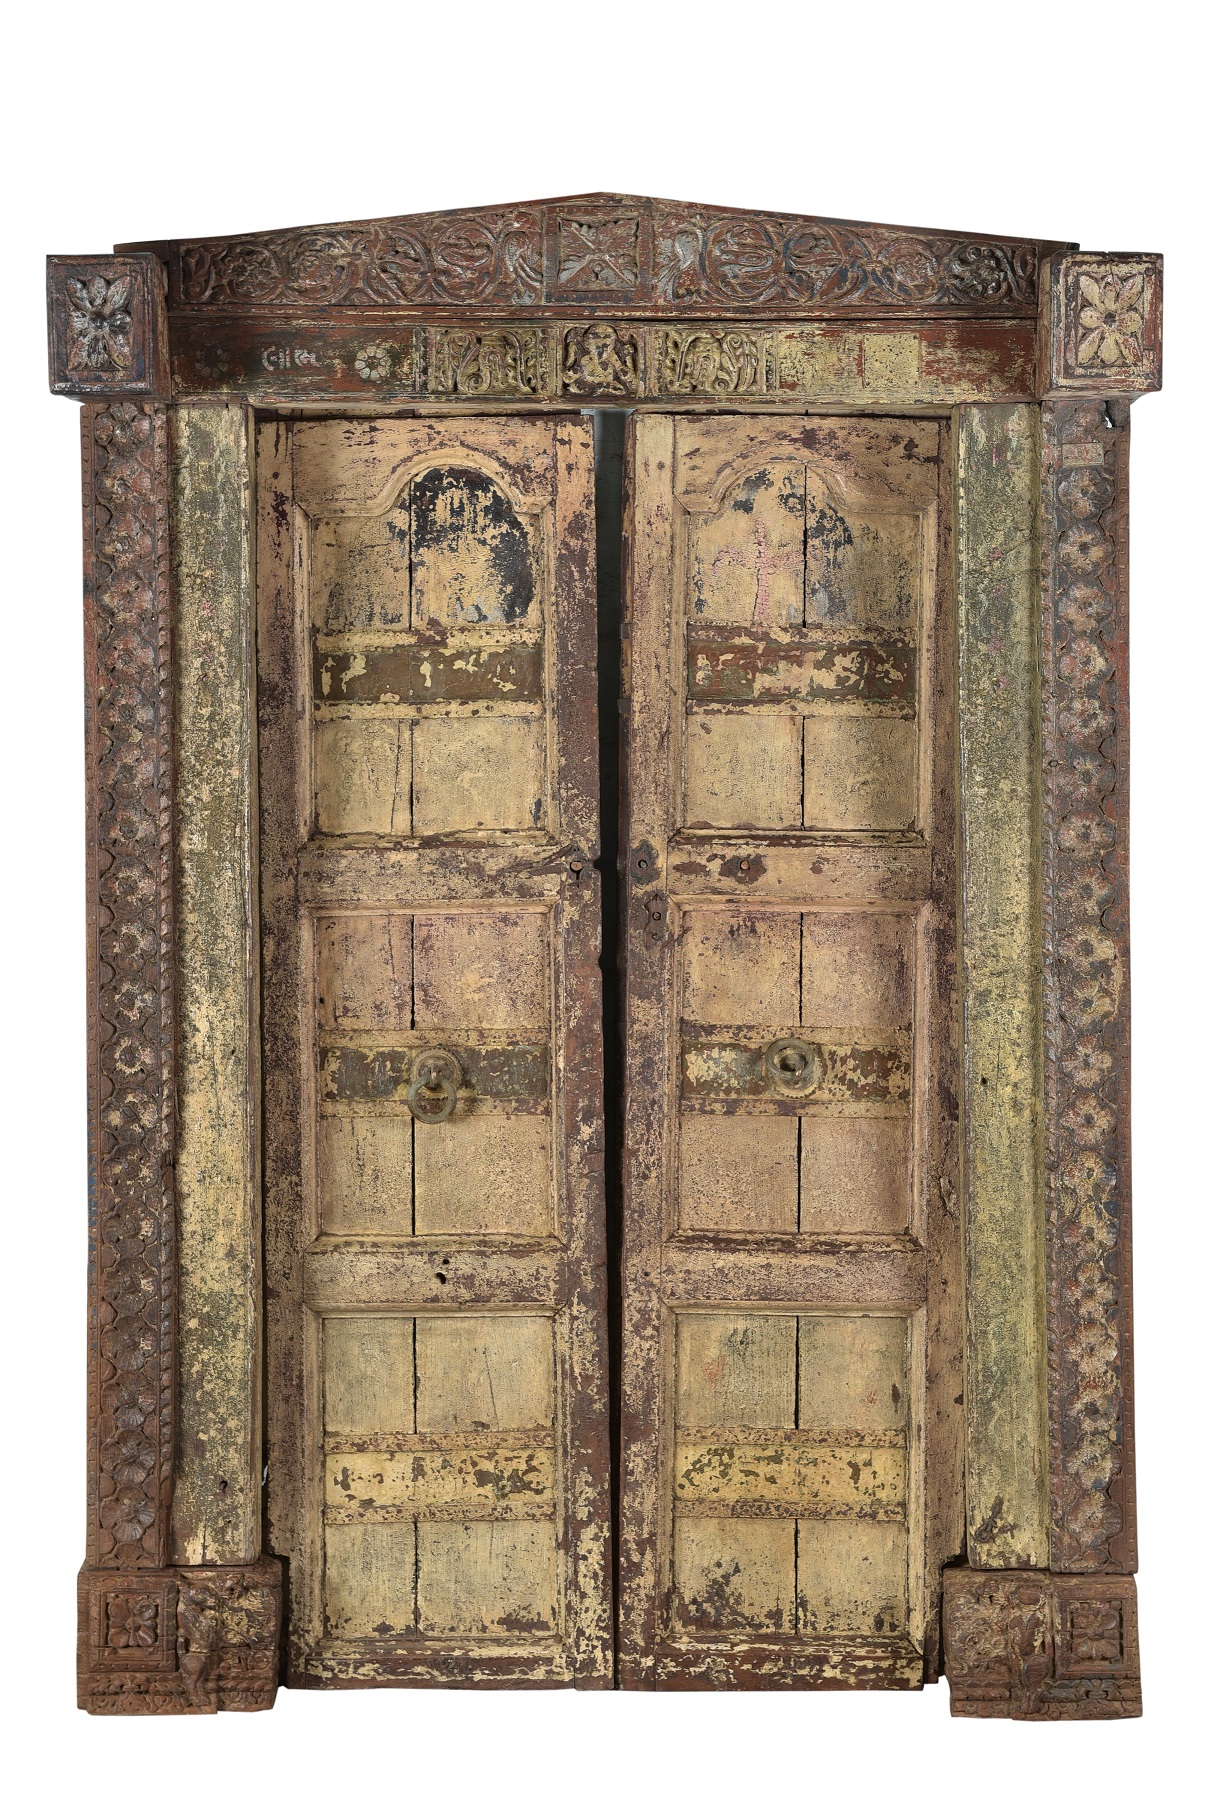 oude deuren uit India • van Klaas Leiden